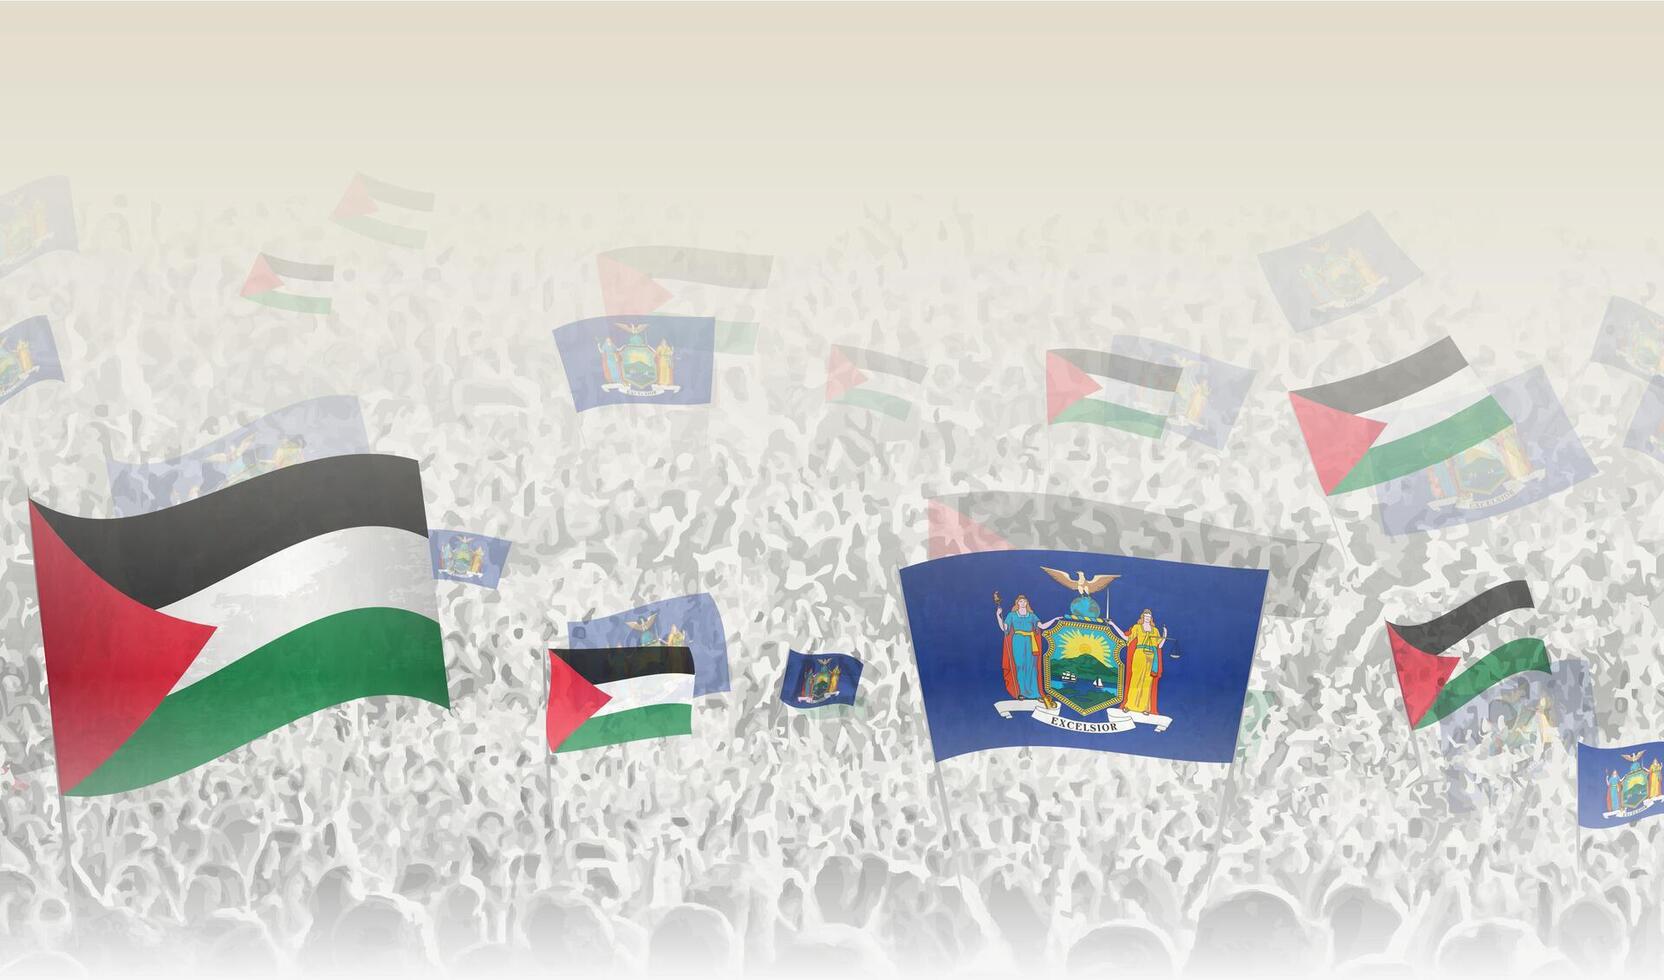 Palestine et Nouveau york drapeaux dans une foule de applaudissement personnes. vecteur